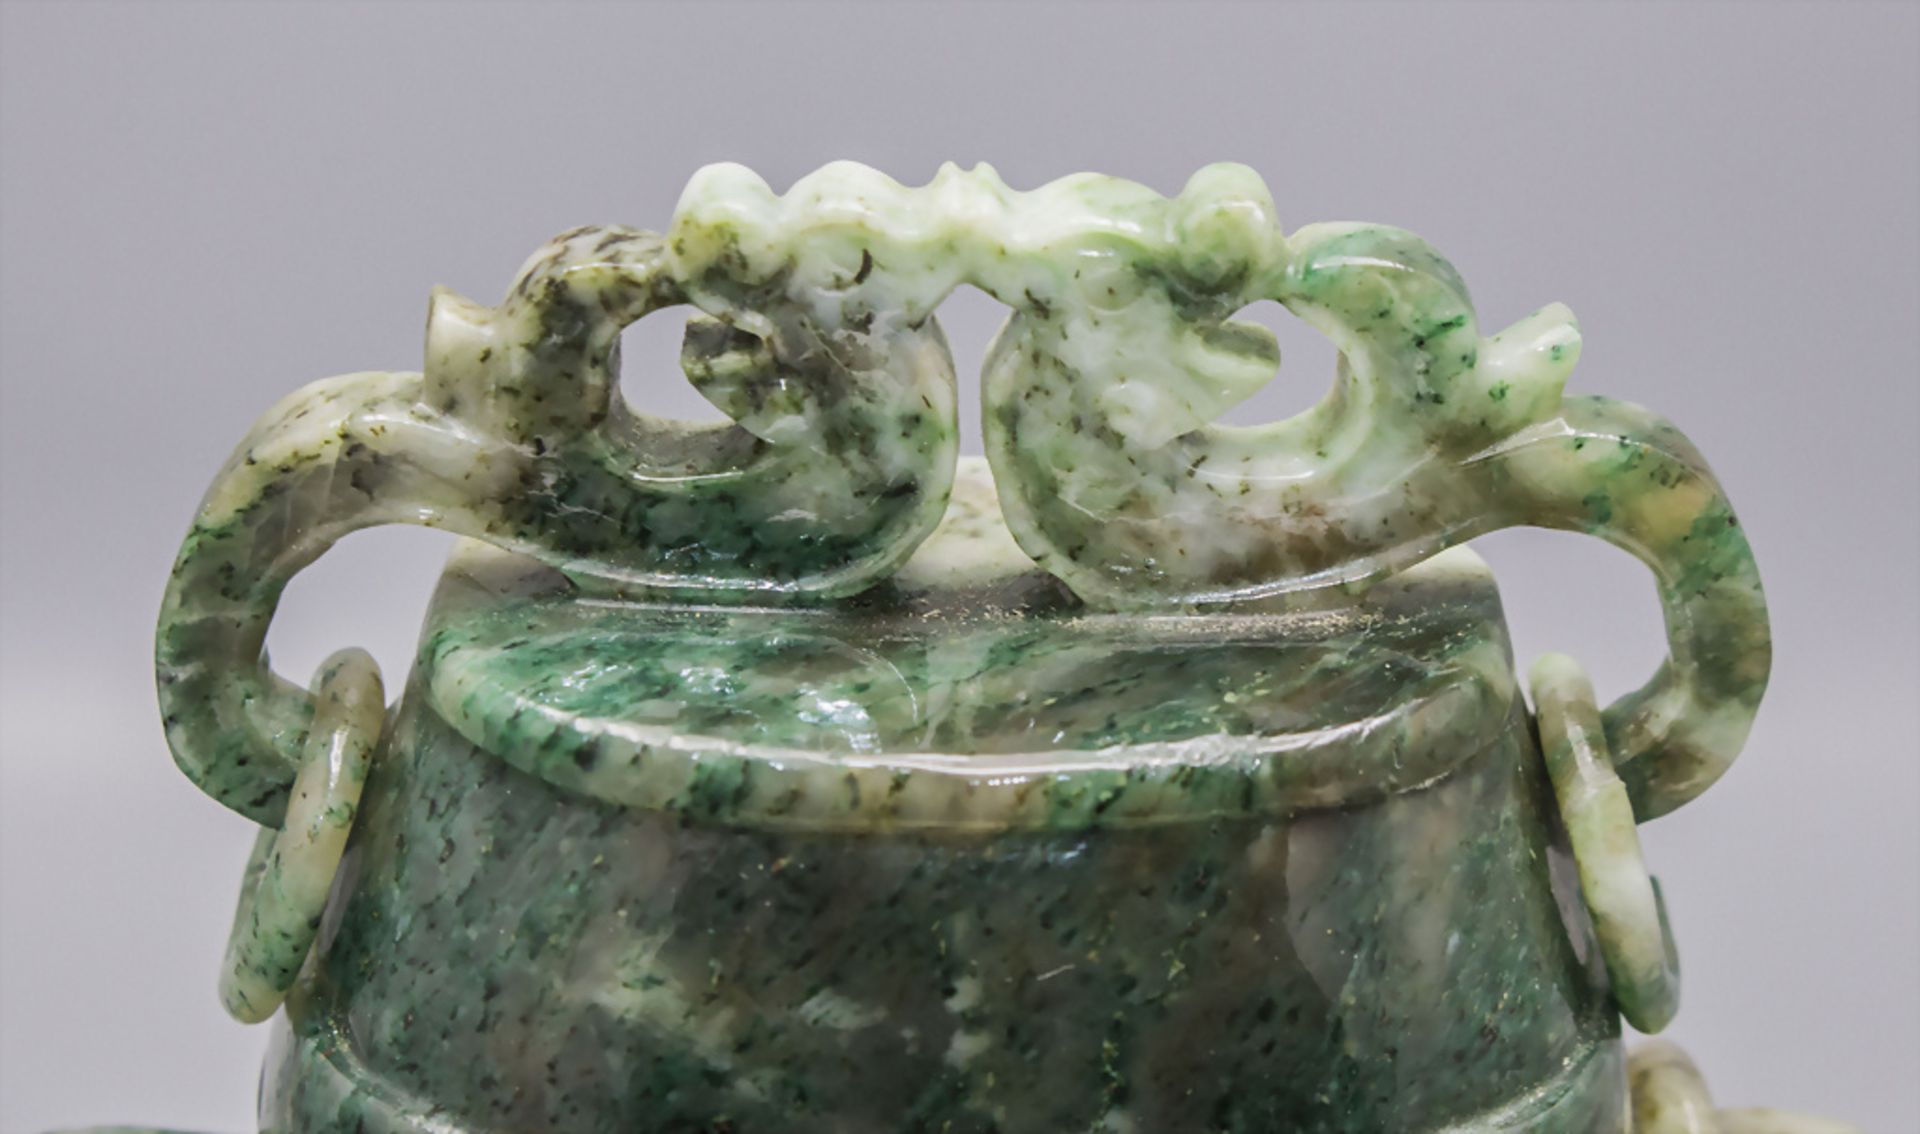 Feine Jade-Deckelvase an Hängekette / A fine jade lidded vase on a chain, China, um 1920 - Image 9 of 10